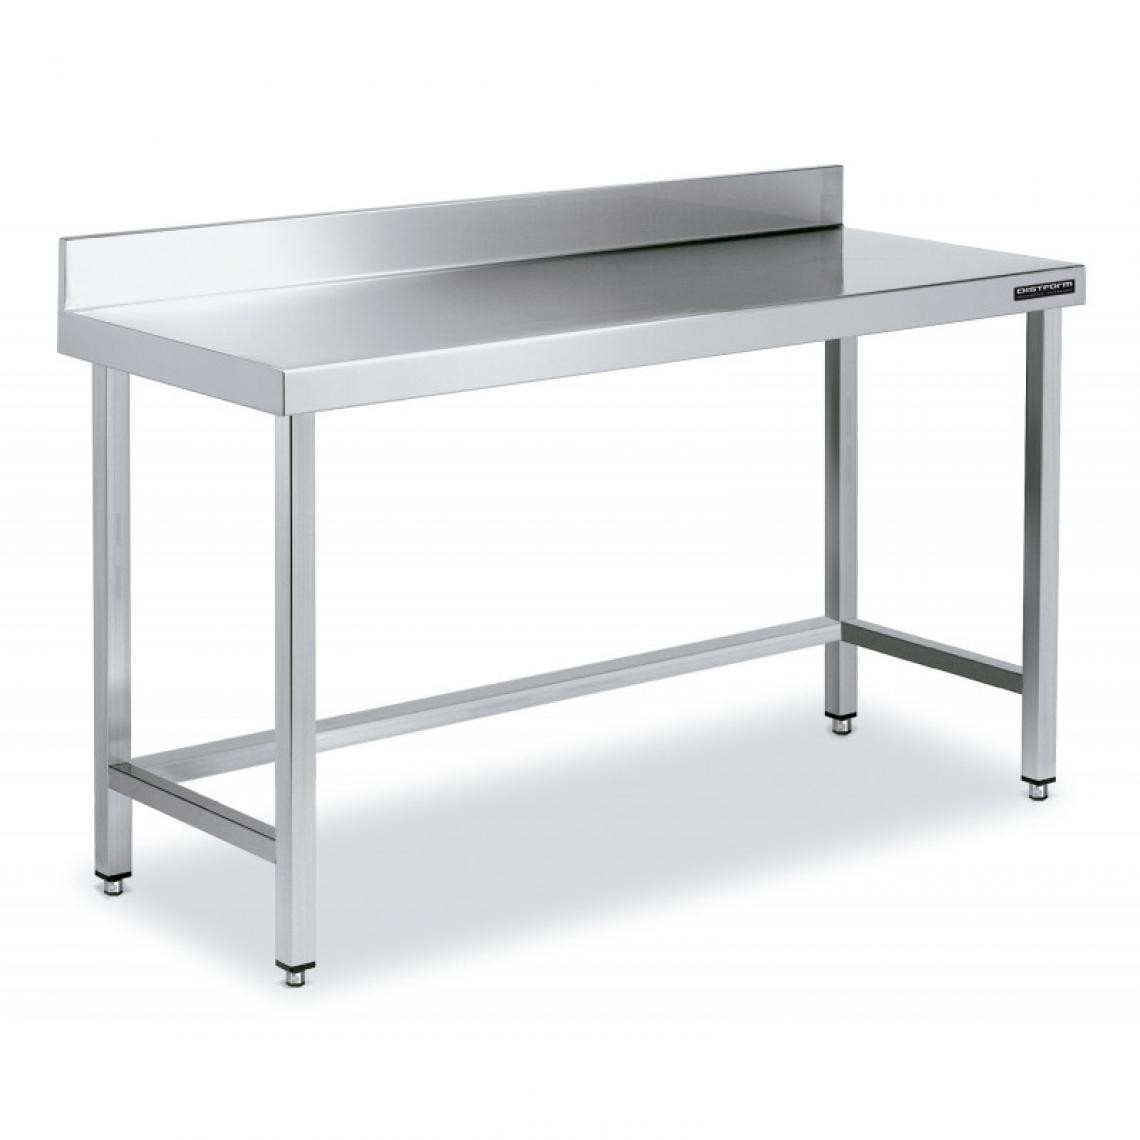 DISTFORM - Table de Travail Adossée Inox avec Renforts - Gamme 600 - Hauteur 600 - Distform - Acier inoxydable1200x600 - Tables à manger